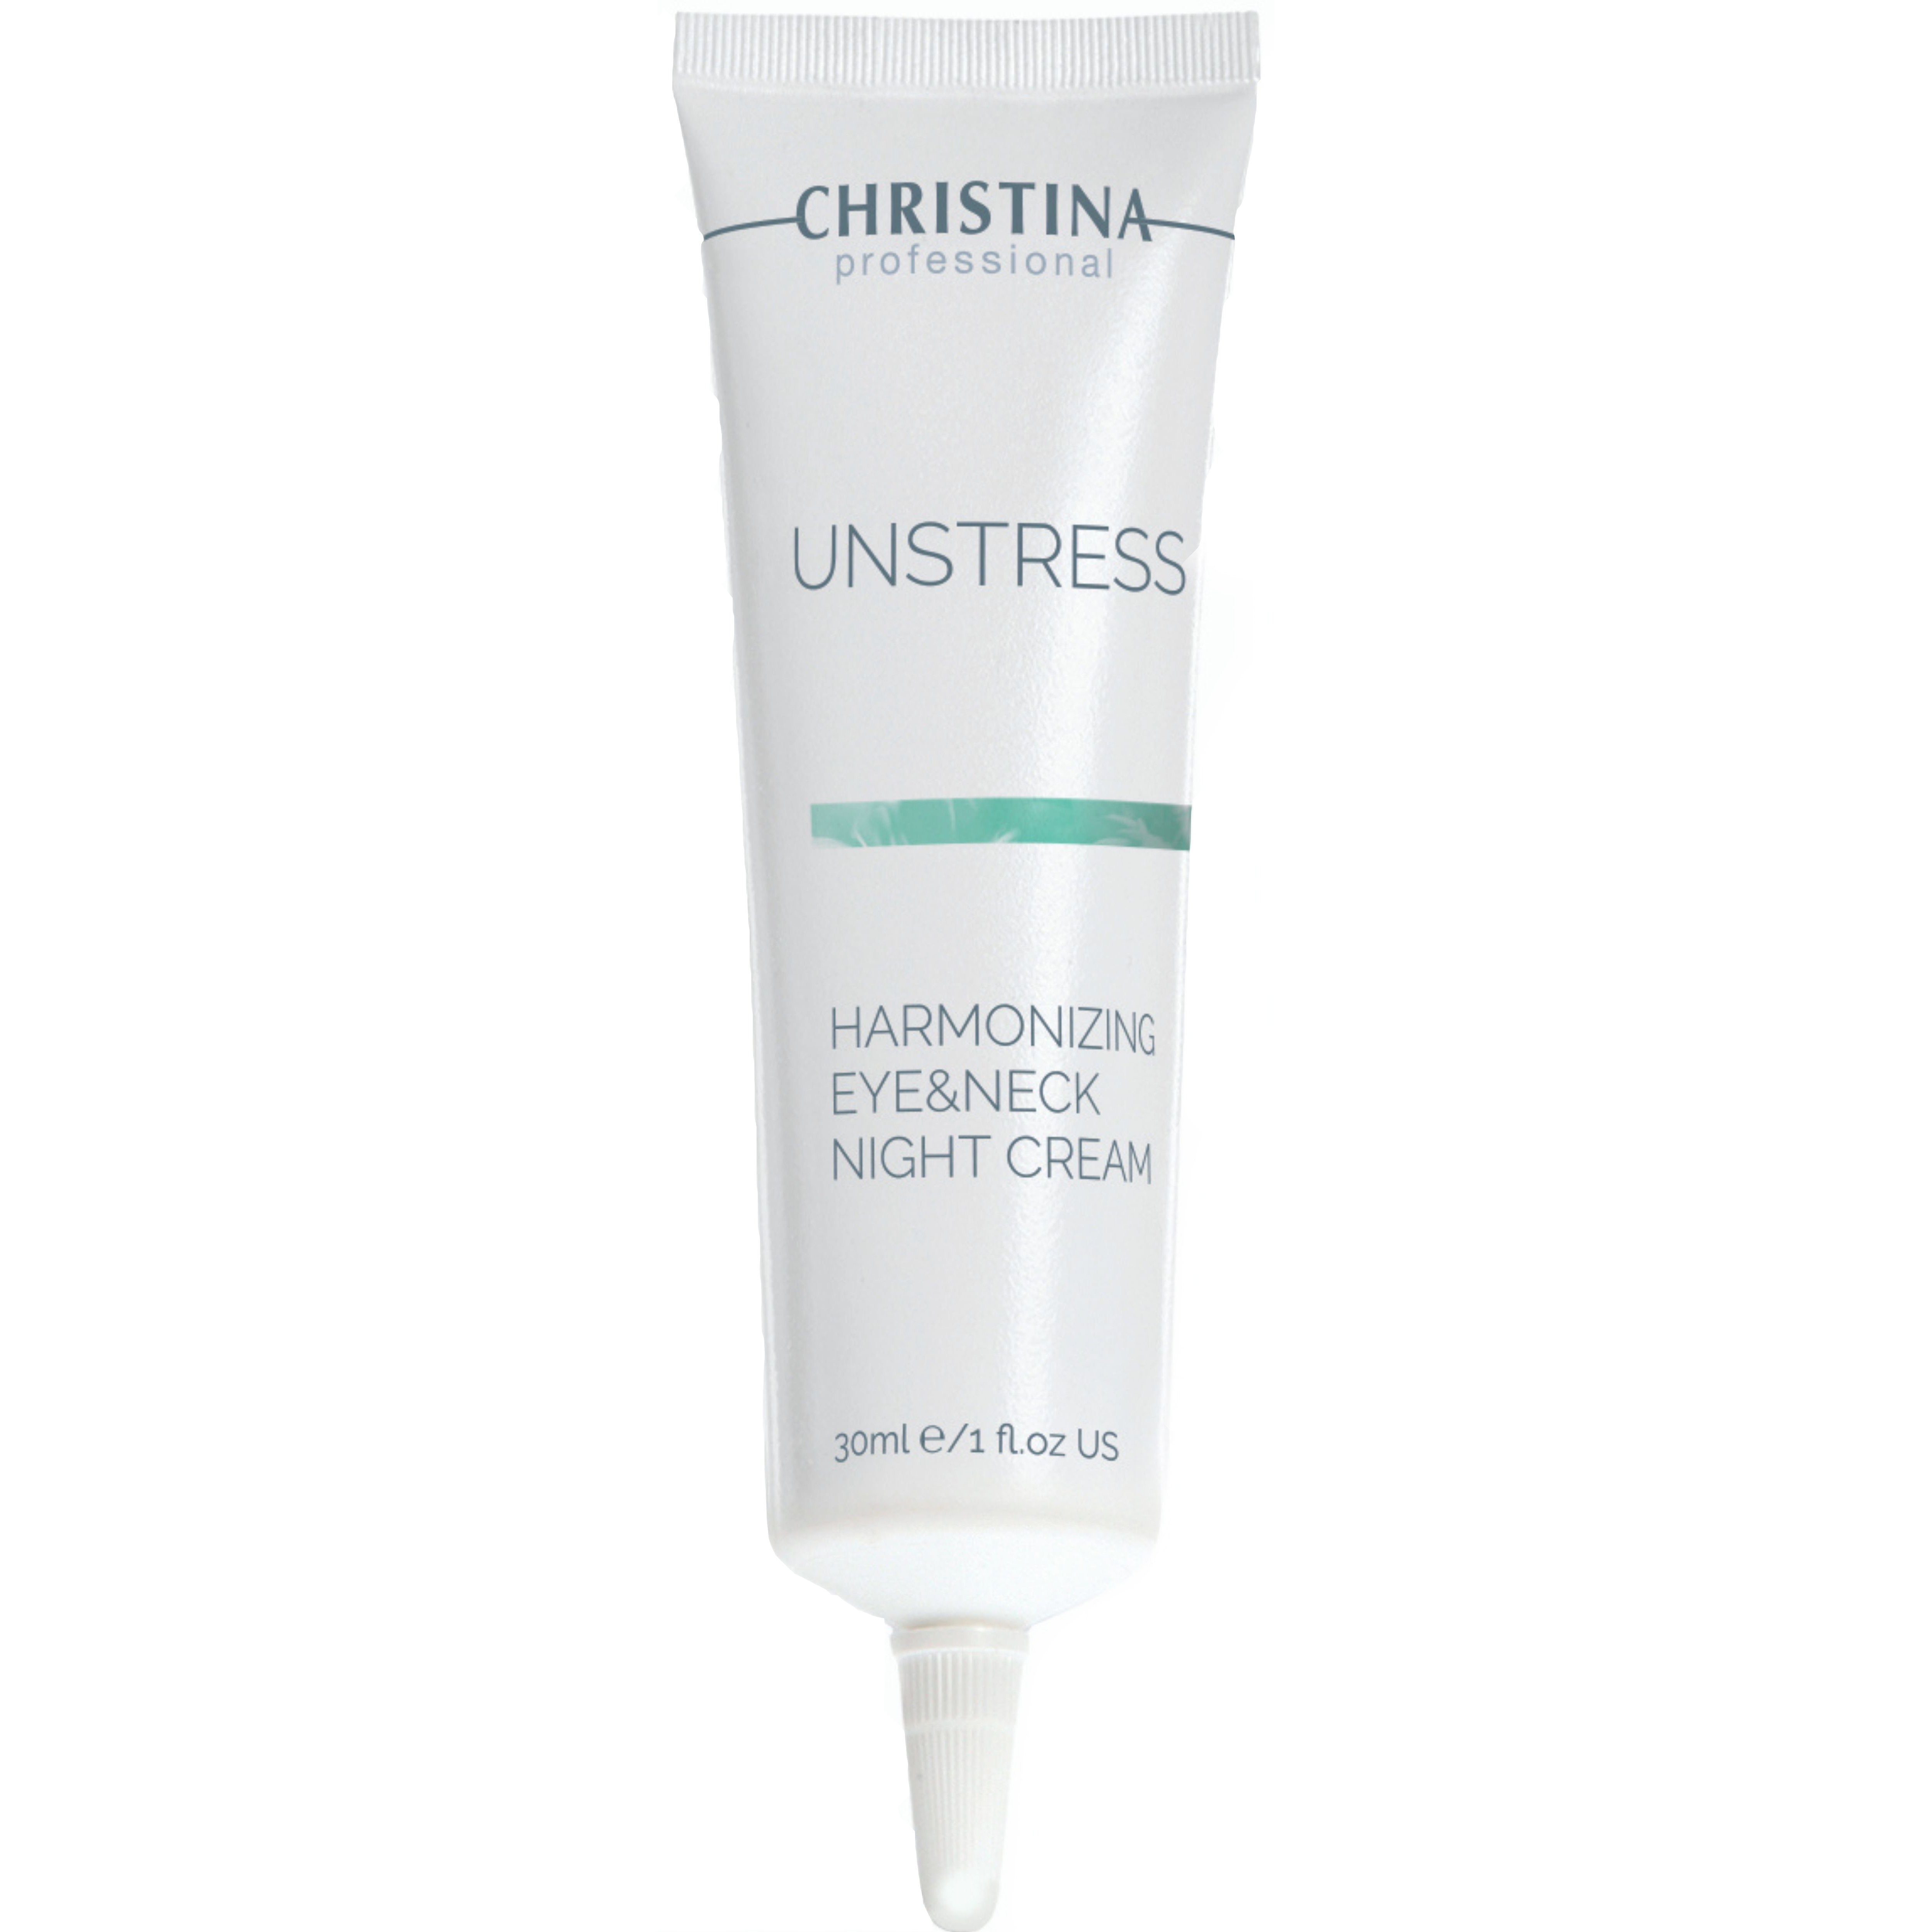 Ночной крем для кожи вокруг глаз и шеи Christina Unstress Harmonizing Night Cream Eye & Neck 30 мл - фото 1